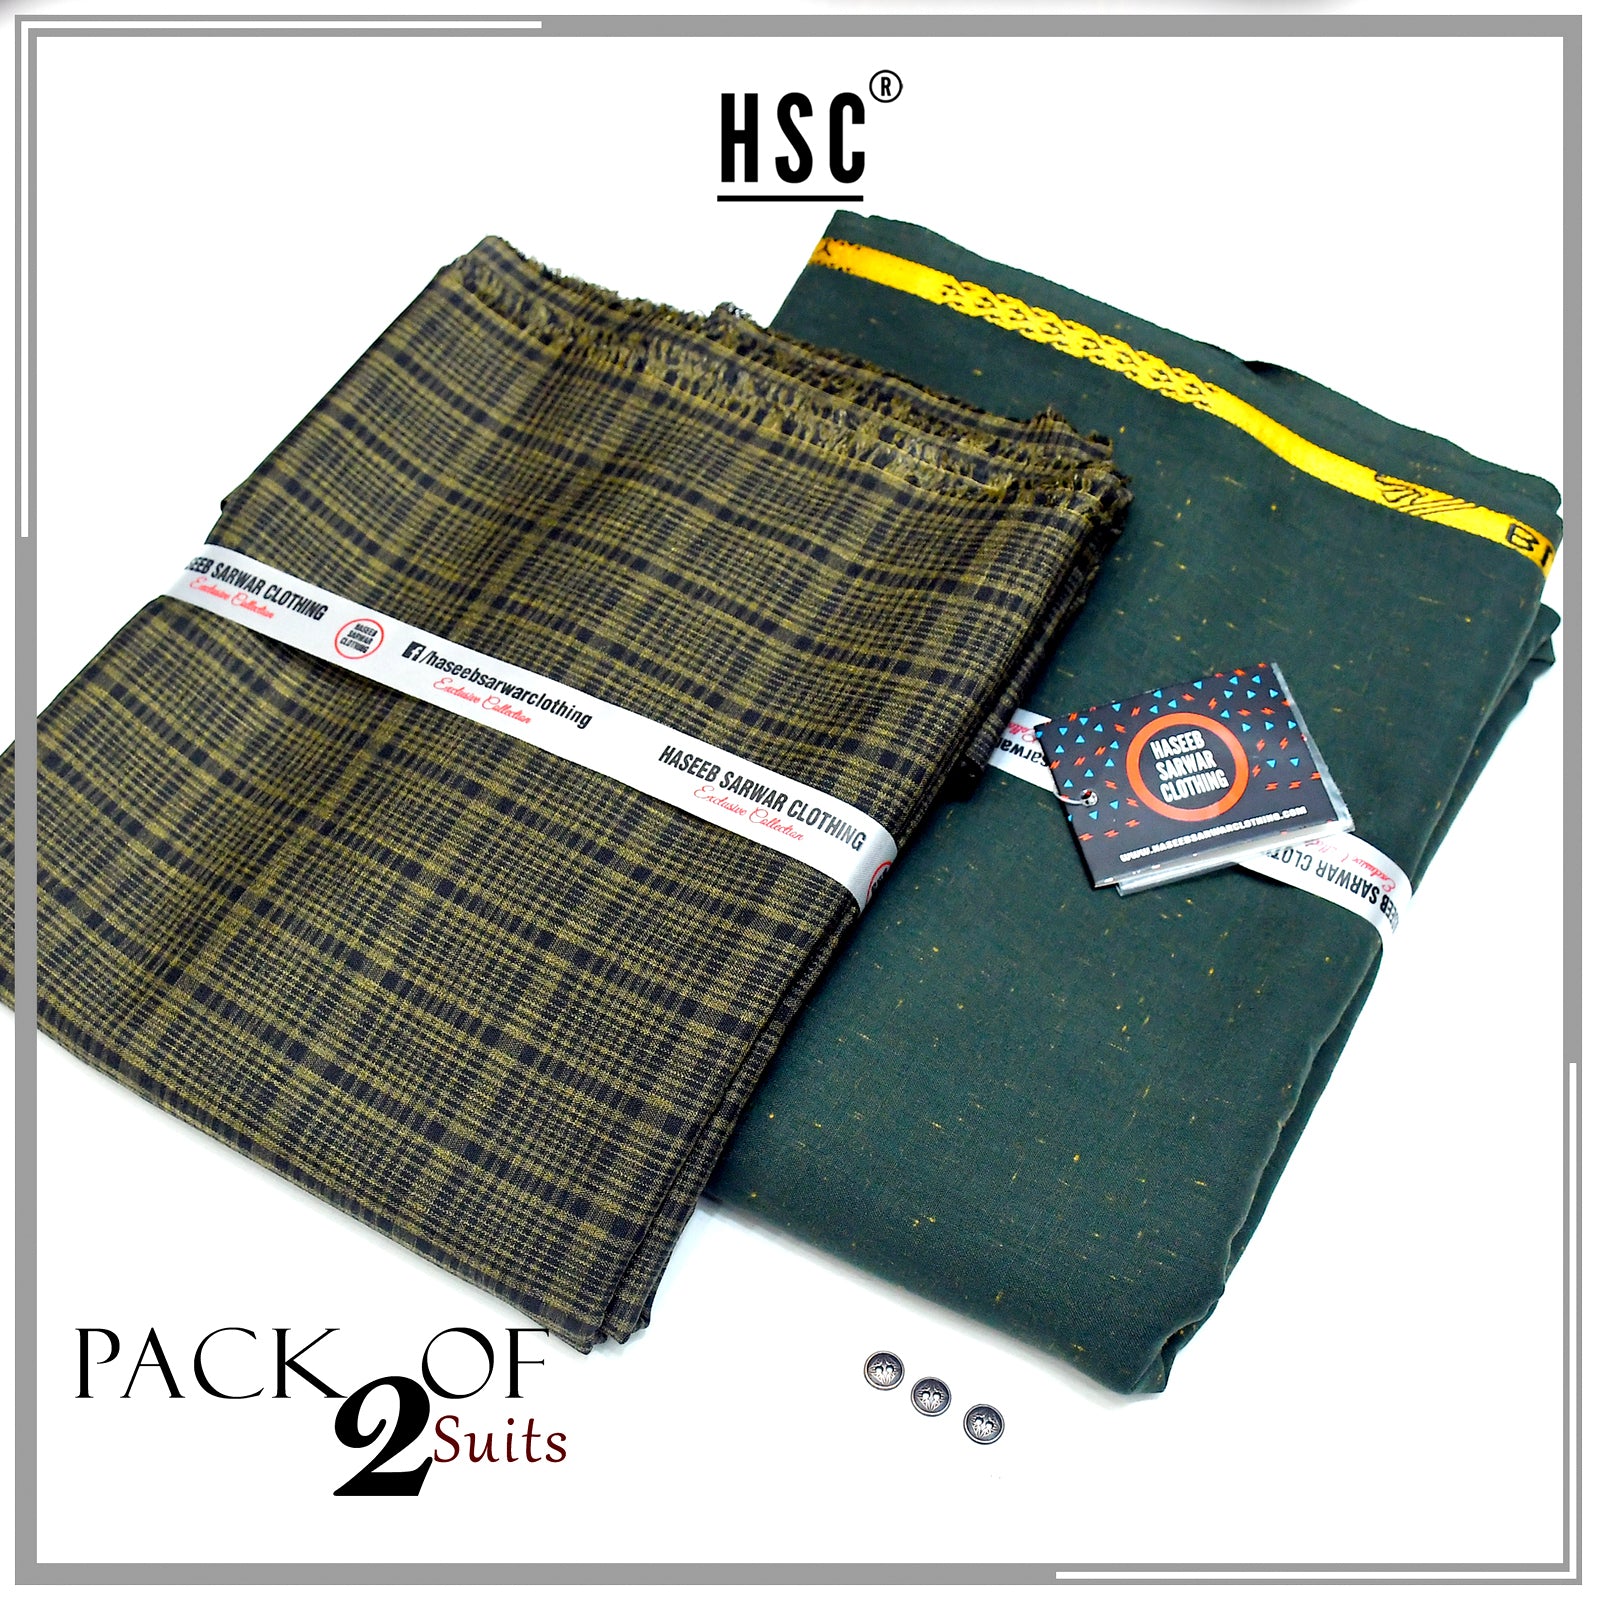 Premium Combo Pack of 2 Suits - PR9 HSC